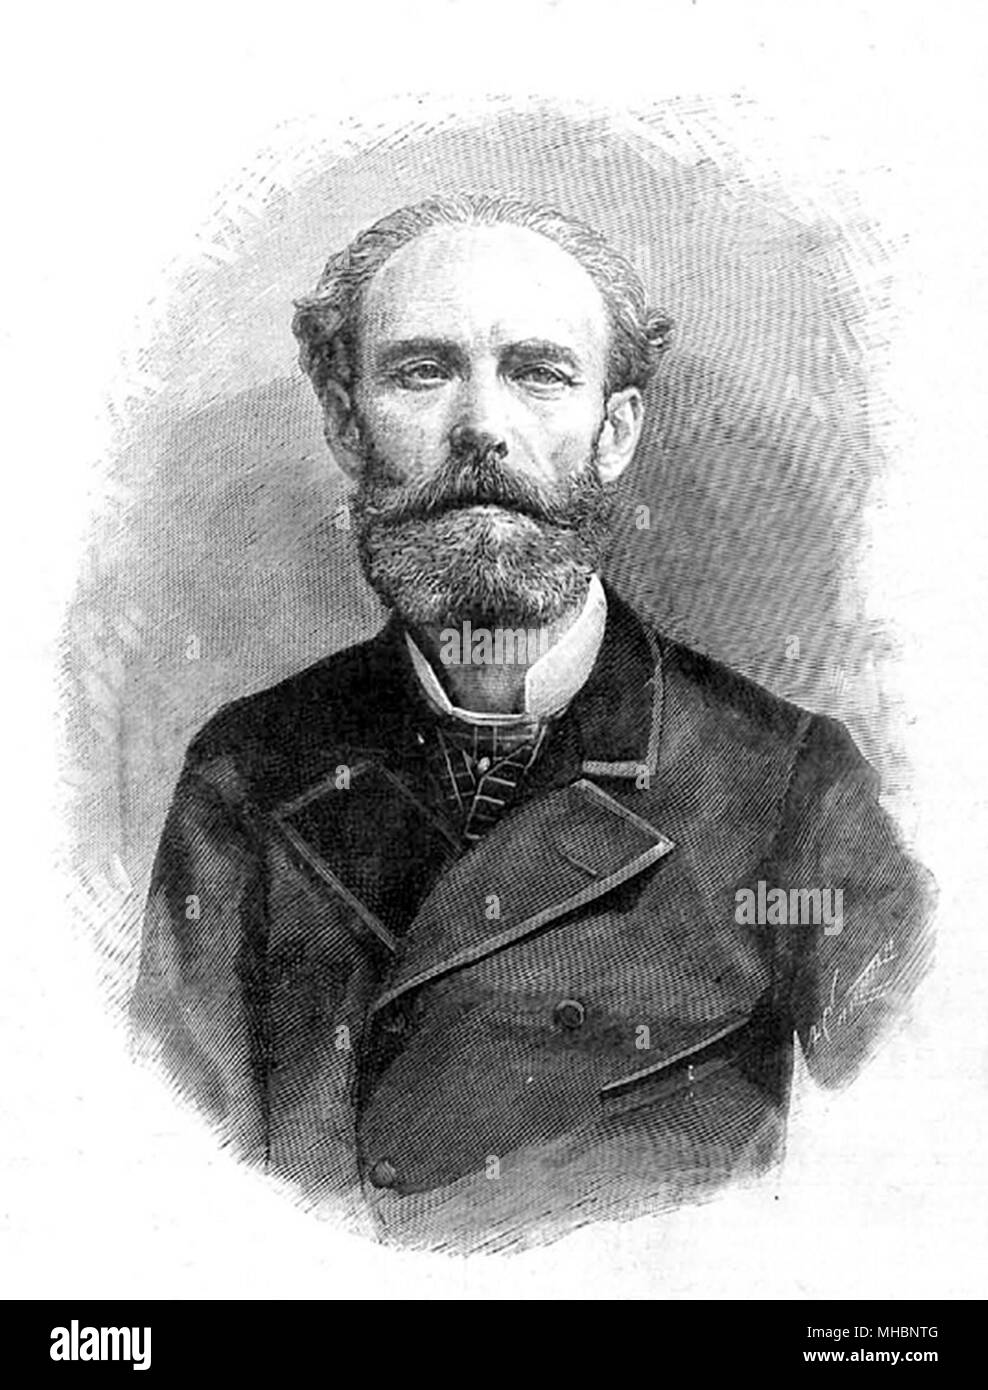 José María Casado del Alisal (1830/32 – 1886) Spanish portrait and history painter. Stock Photo